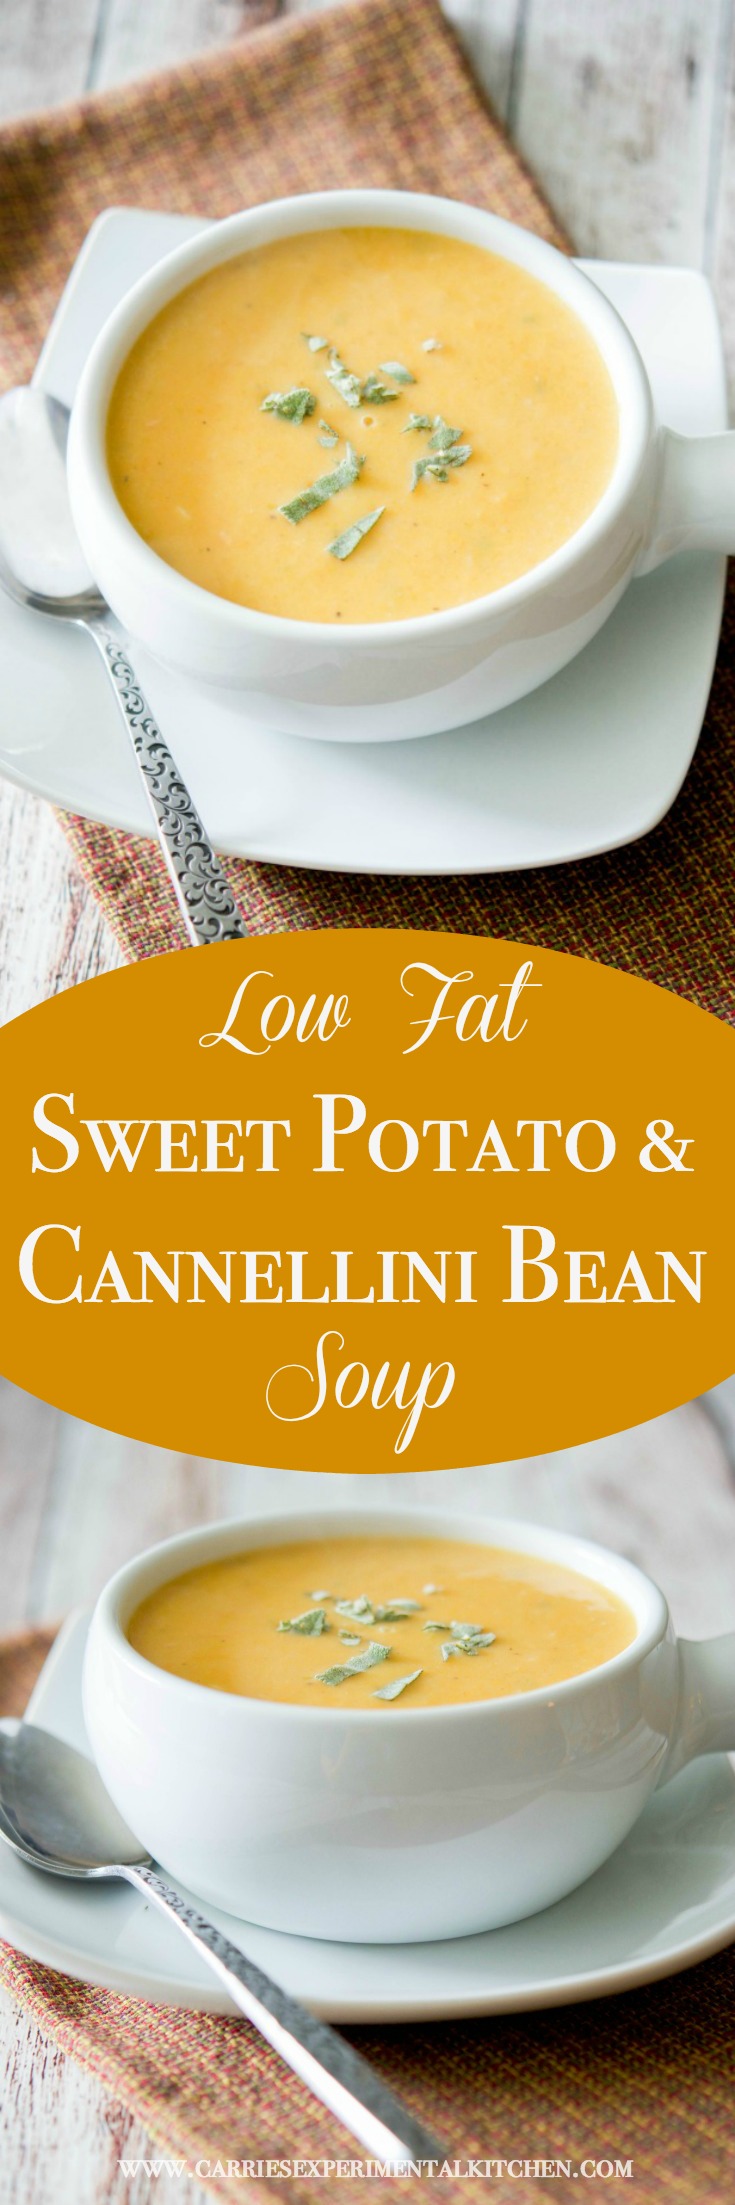 Healthy Low Fat Sweet Potato & Cannellini Bean Soup